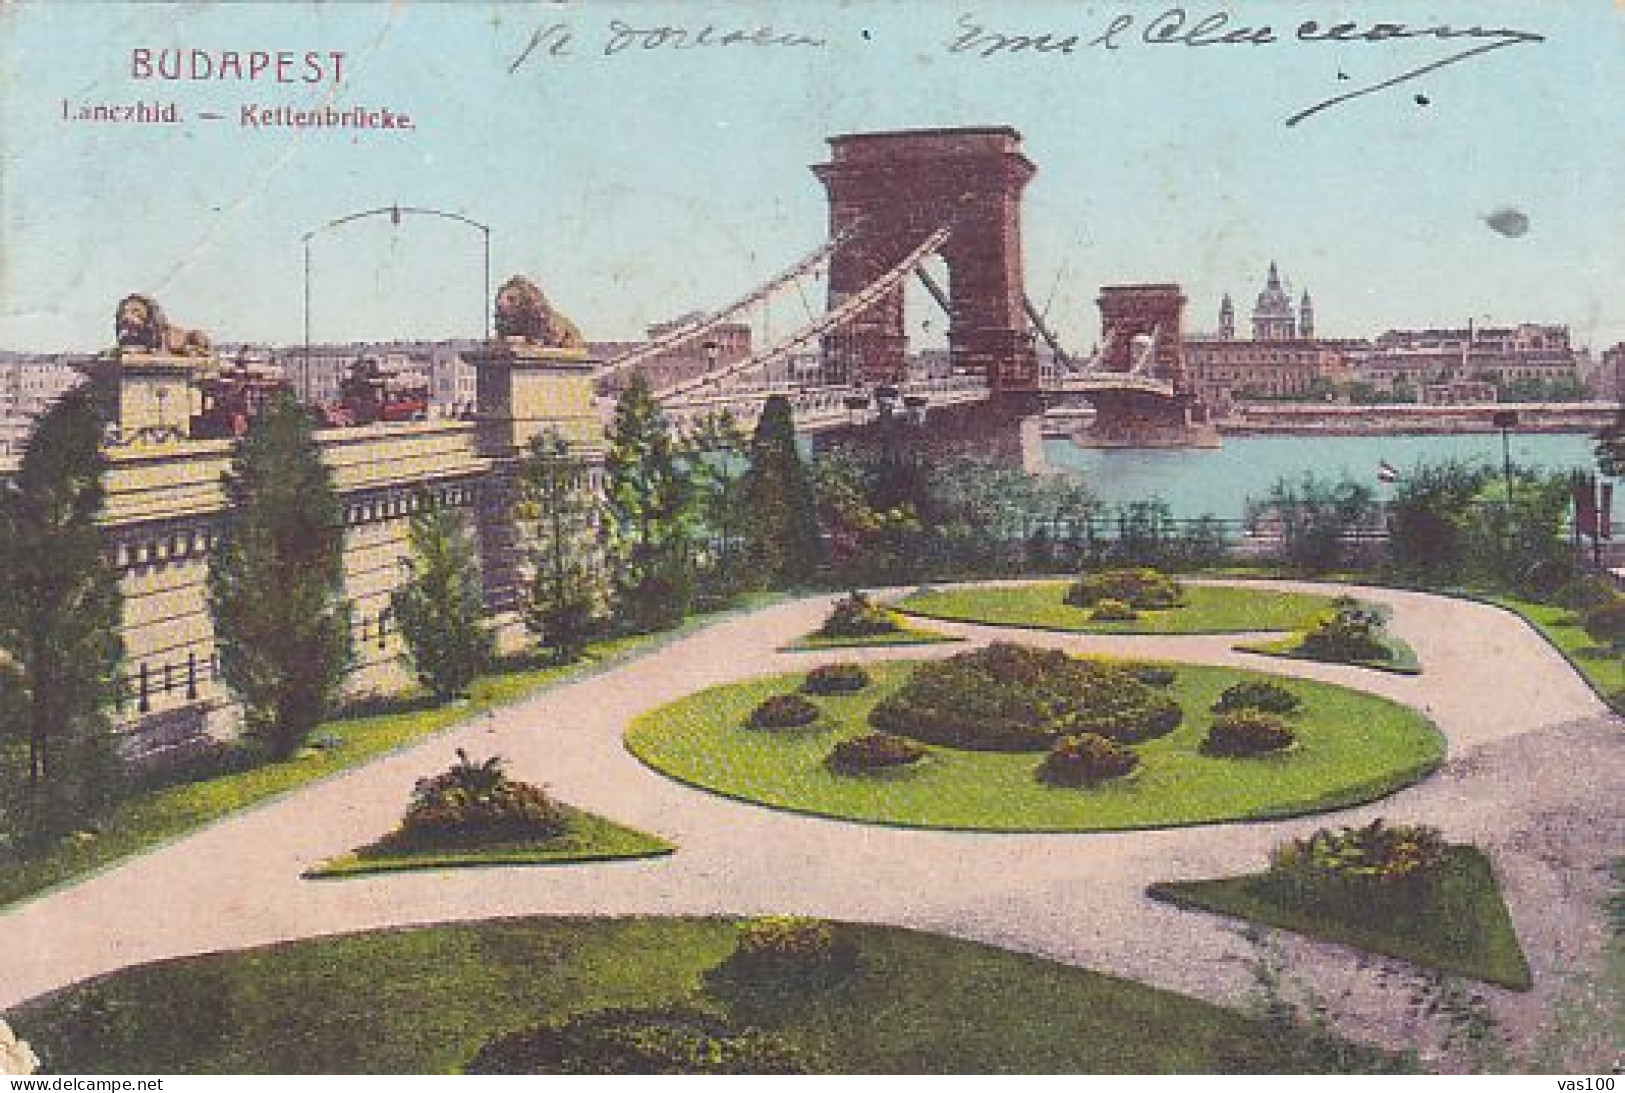 POSTAGE DUE, PORTO STAMPS ON BUDAPEST CHAIN BRIDGE POSTCARD, 1907, ROMANIA - Port Dû (Taxe)